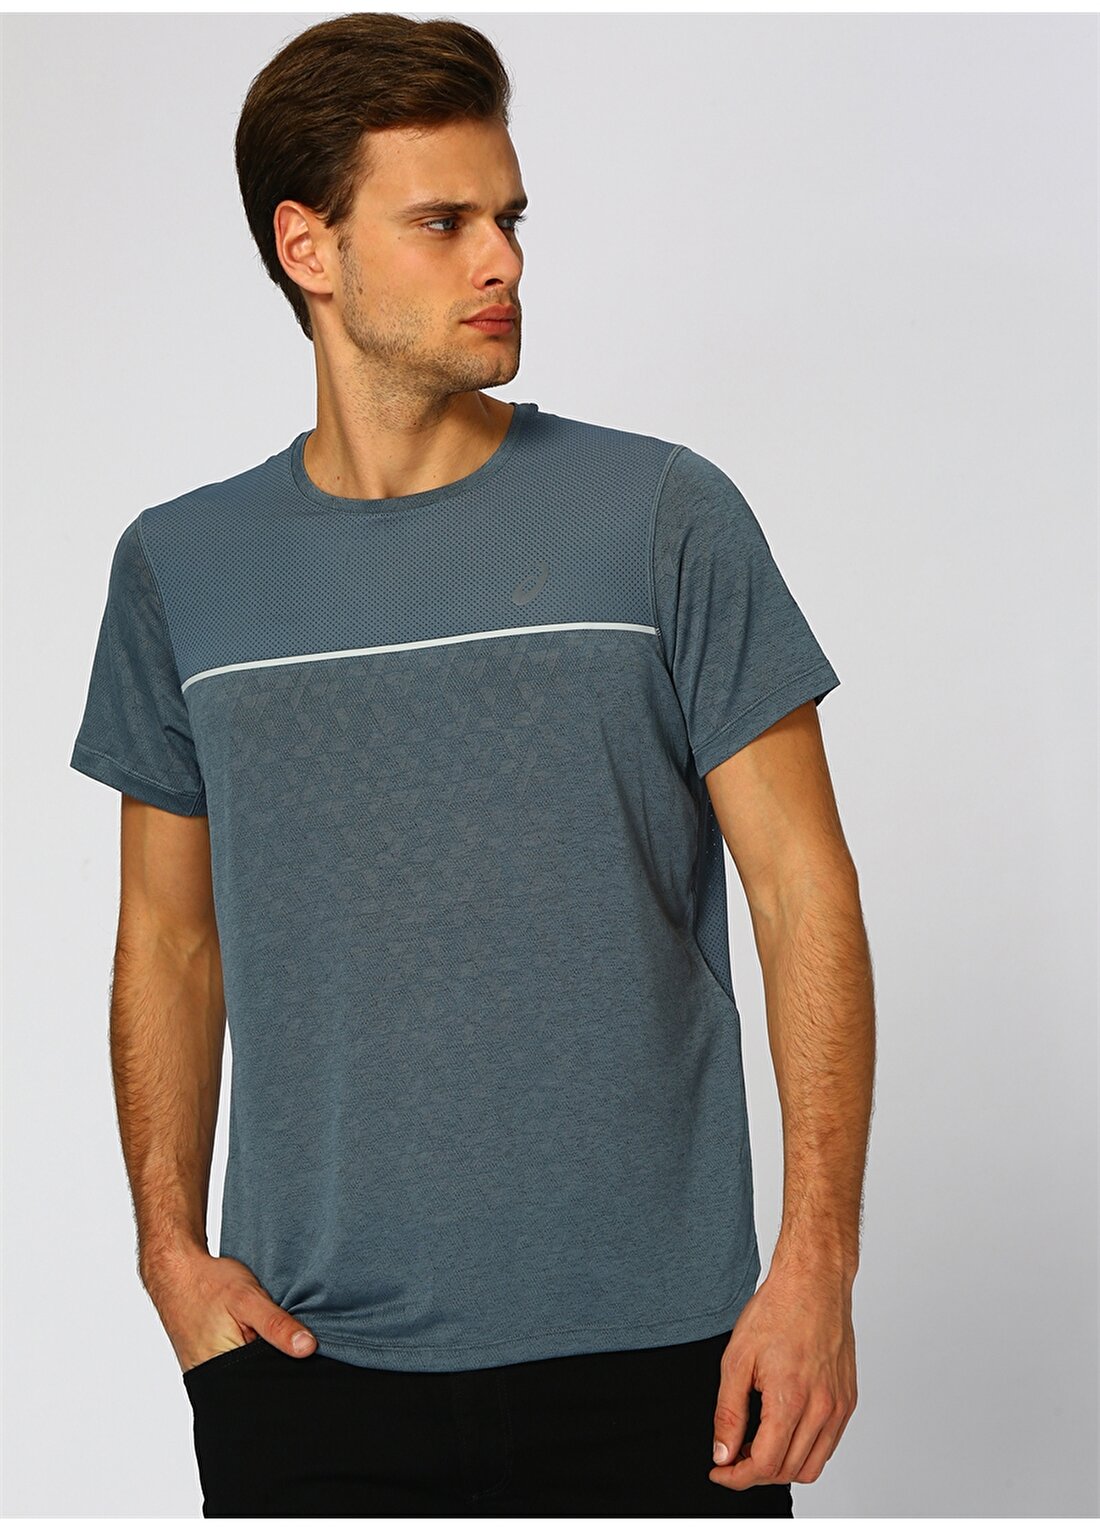 Asics Gel-Cool Ss T-Shirt